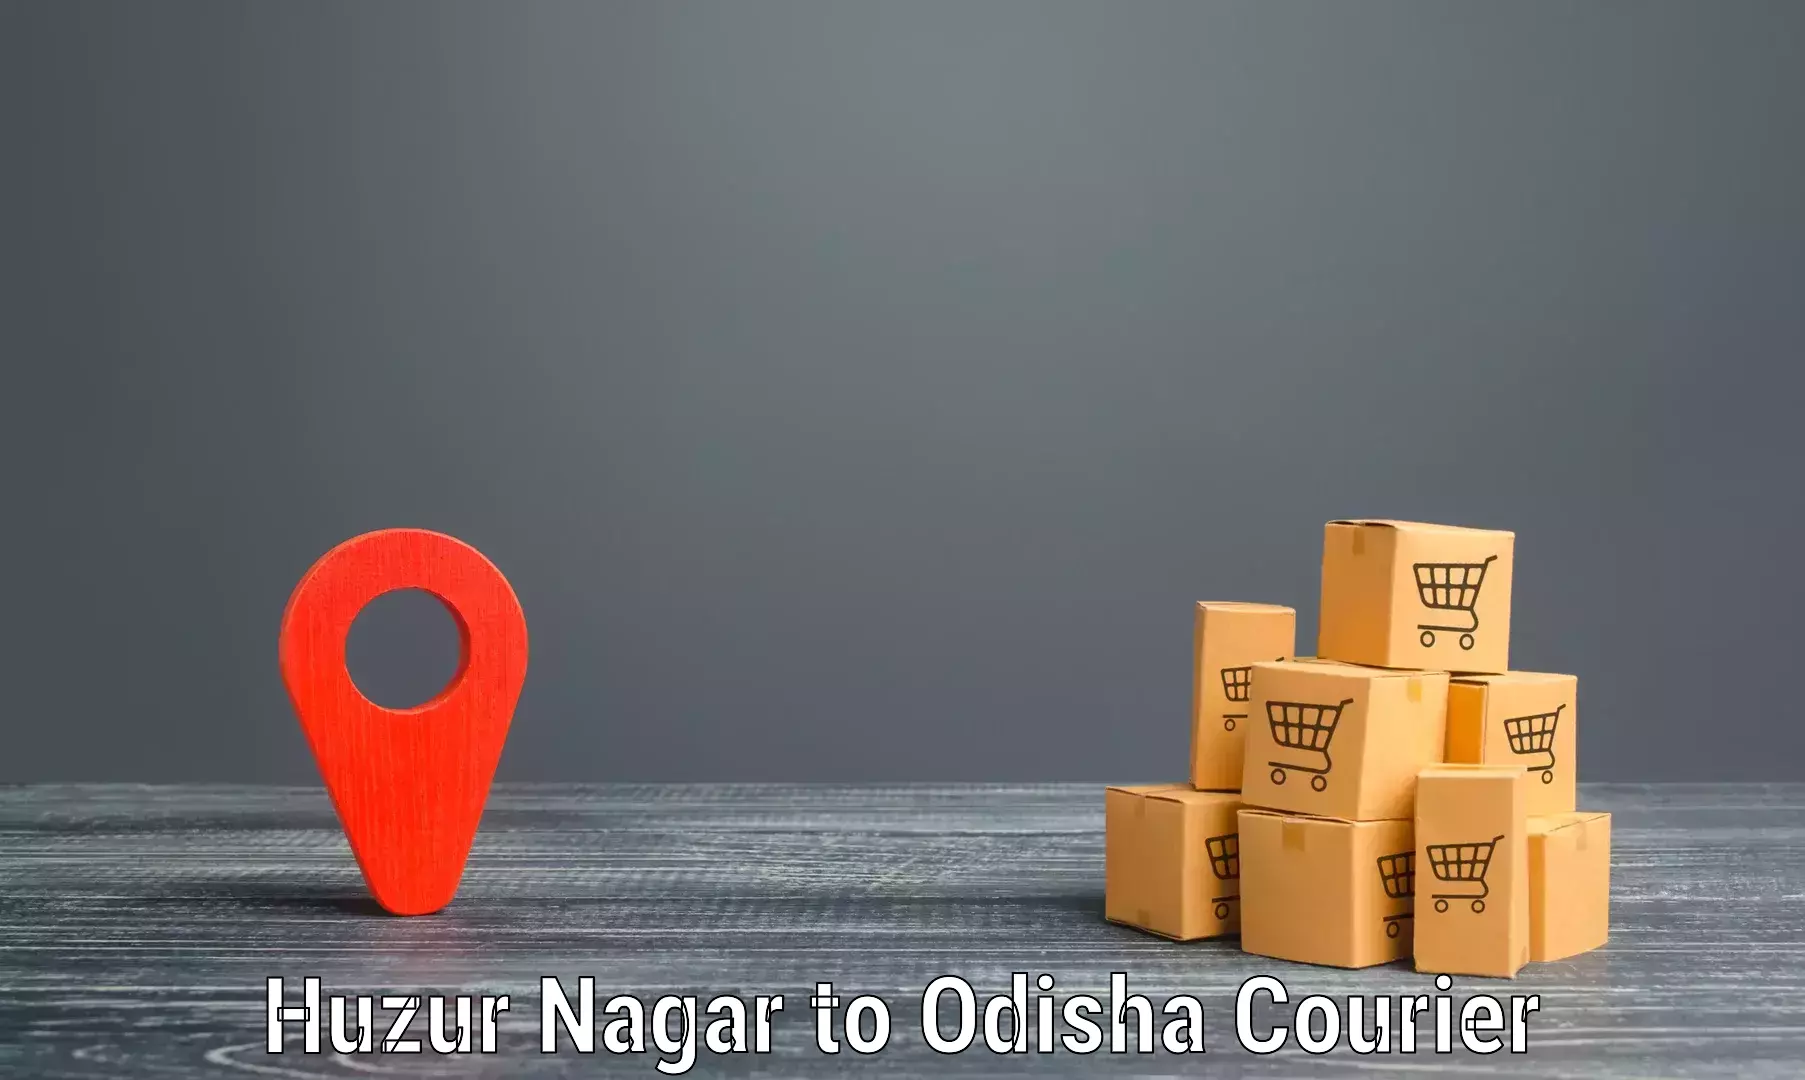 Tech-enabled shipping Huzur Nagar to Baripada